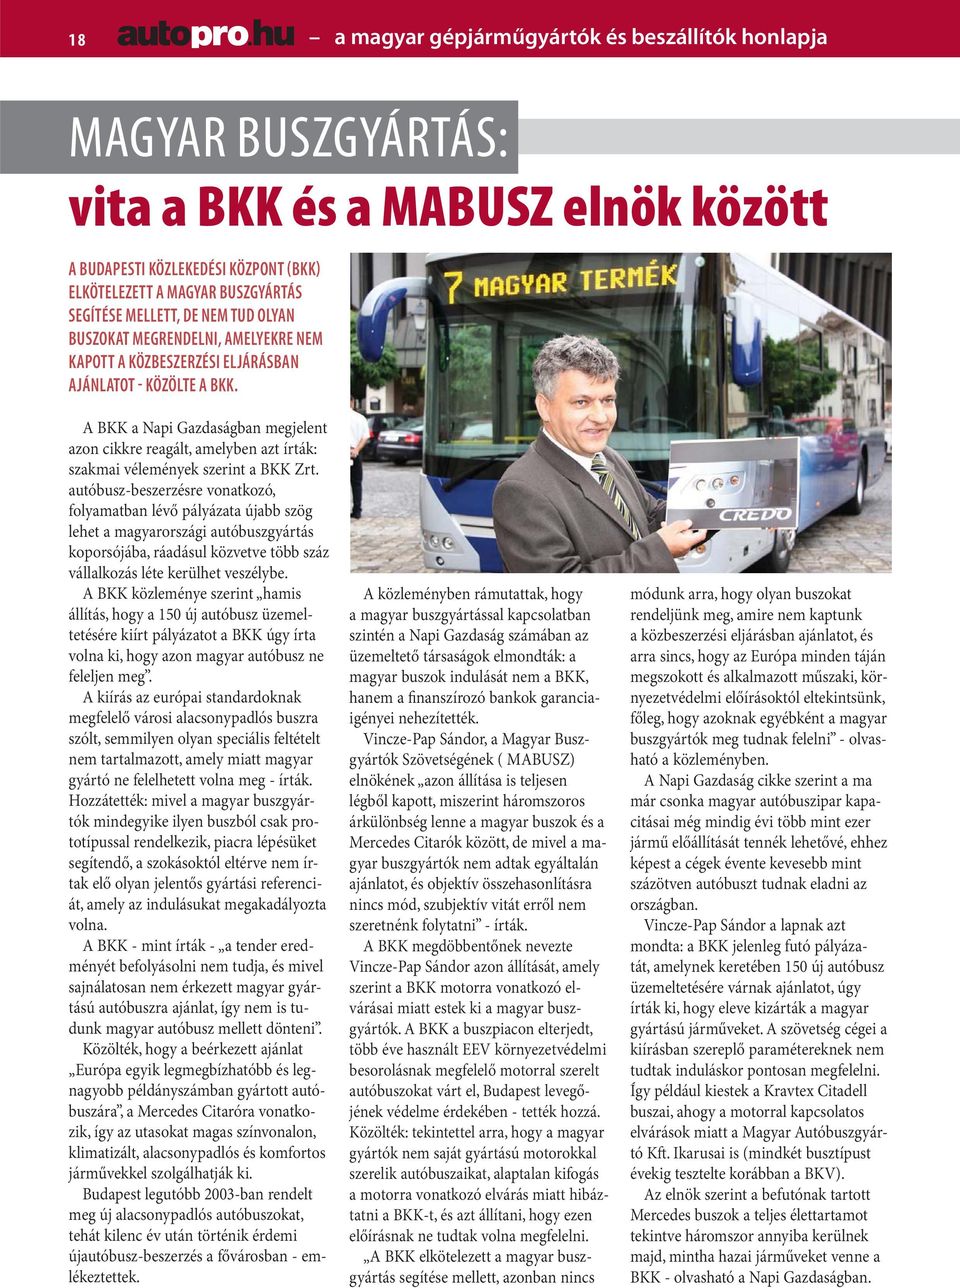 A BKK a Napi Gazdaságban megjelent azon cikkre reagált, amelyben azt írták: szakmai vélemények szerint a BKK Zrt.